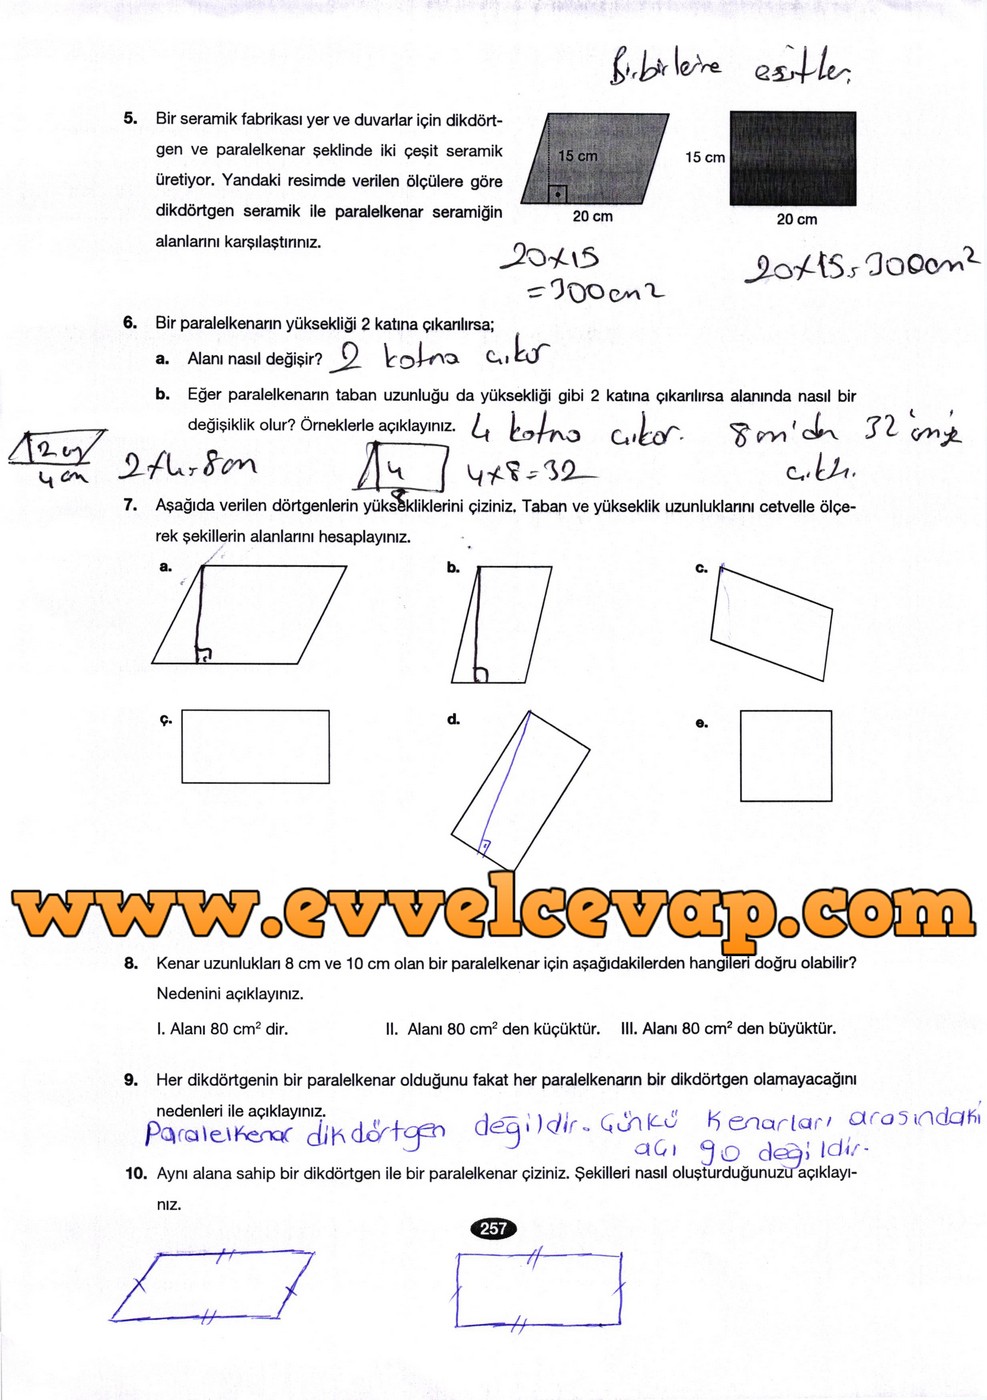 6. Sınıf Berkay Yayıncılık Matematik Ders Kitabı Sayfa 257 Cevabı